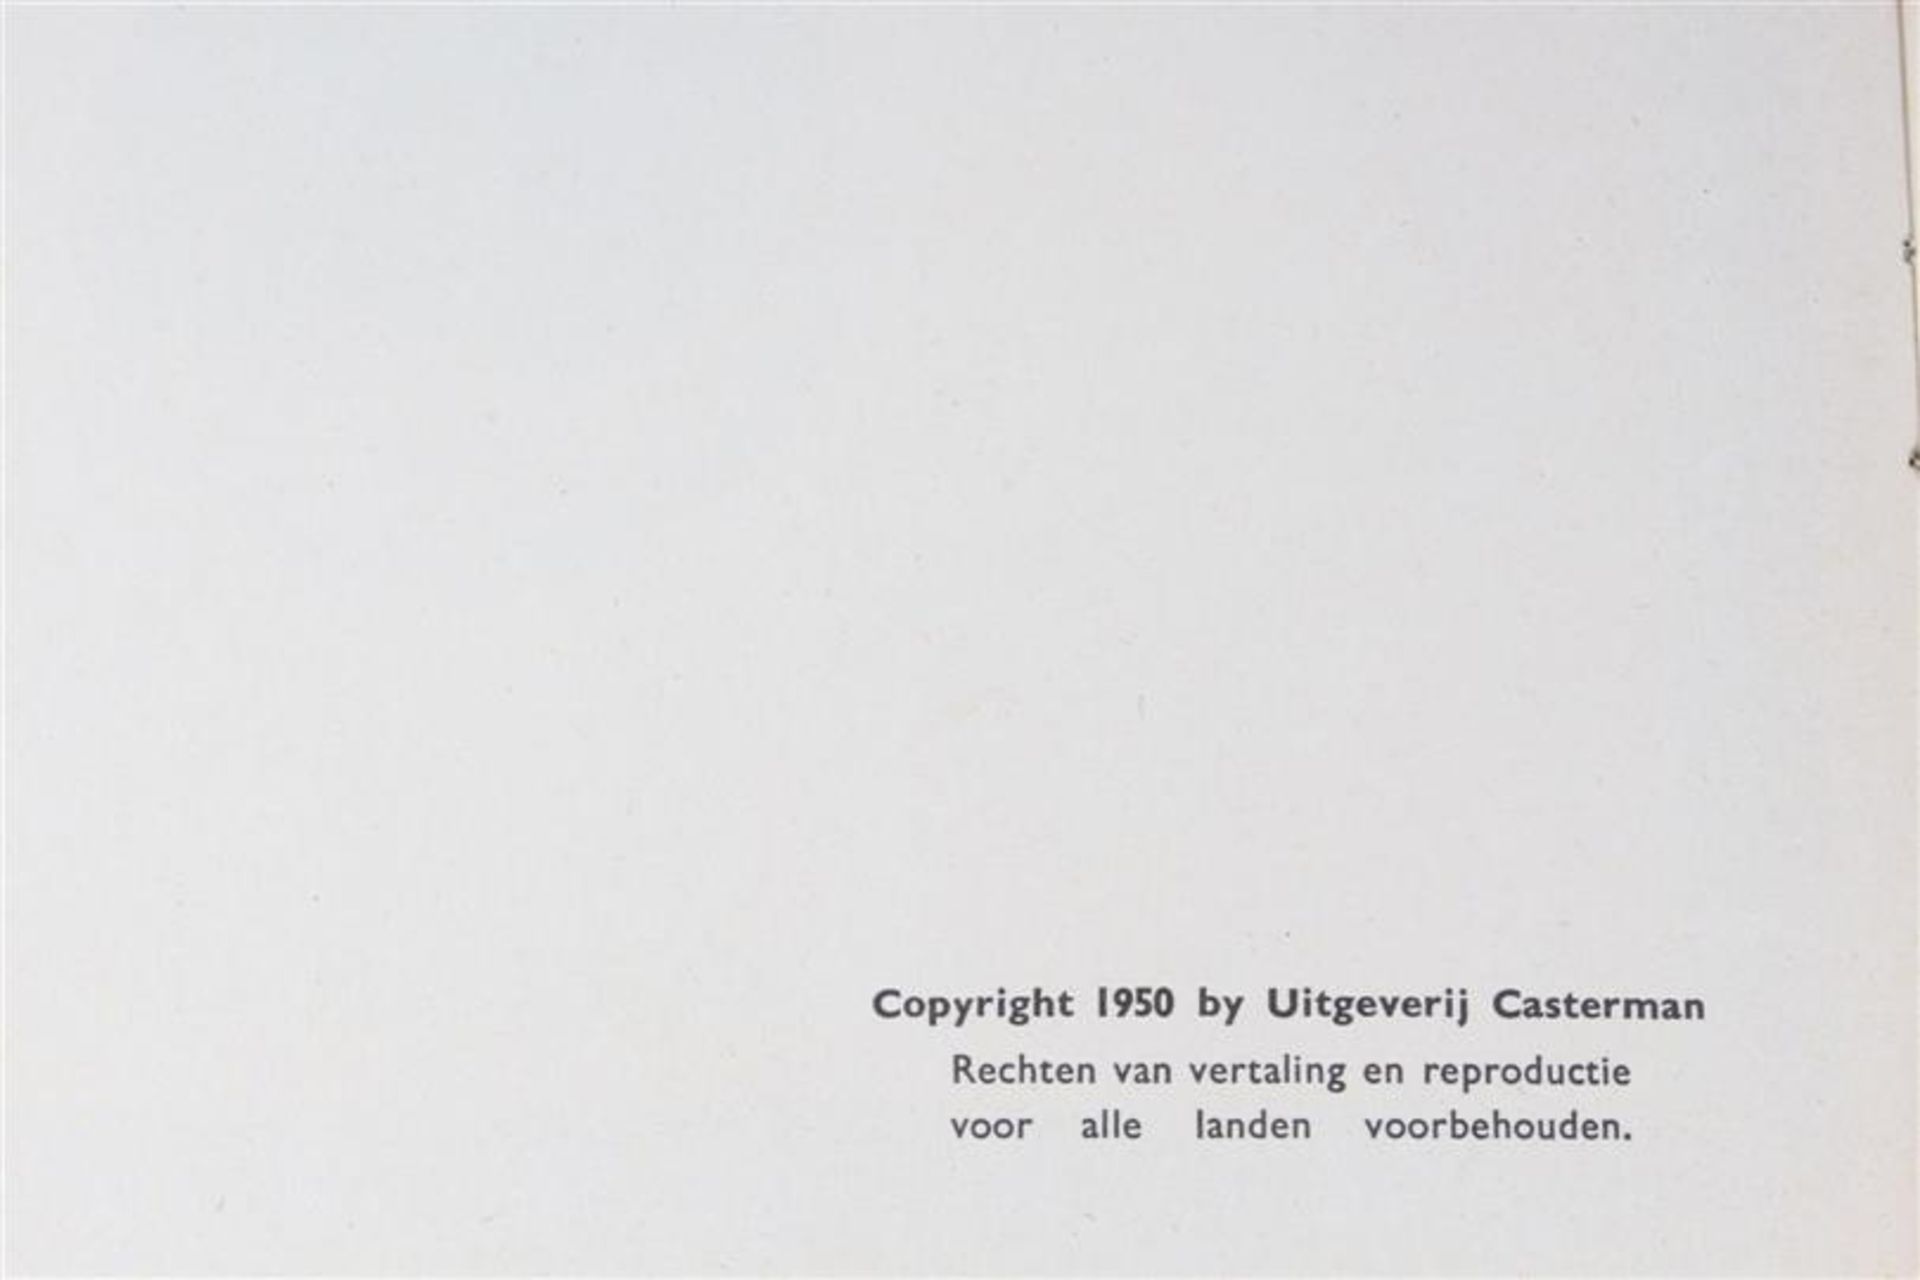 De avonturen van Kuifje, Hergé, uitgeverij Casterman, 7 hardcovers en drie softcovers. - Bild 2 aus 17